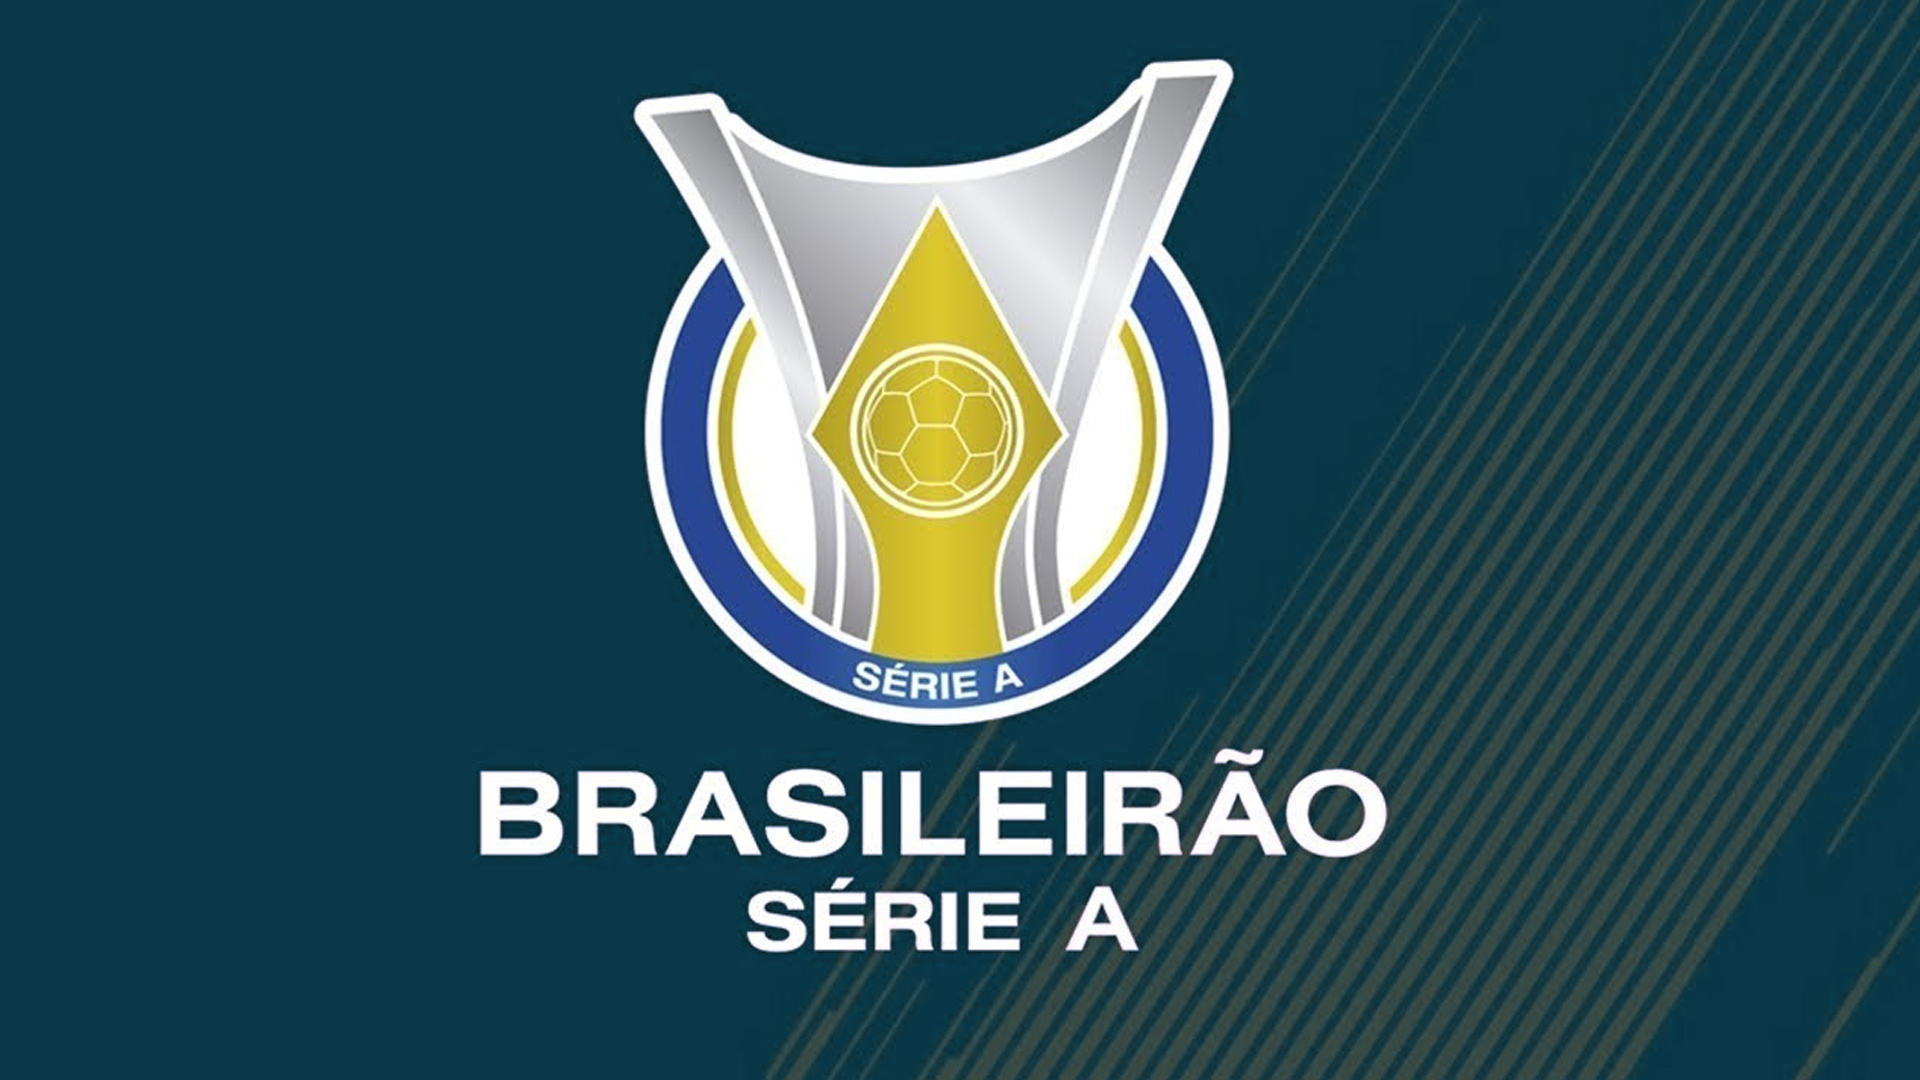 Campeonato Brasileiro Série A Wallpapers Wallpaper Cave